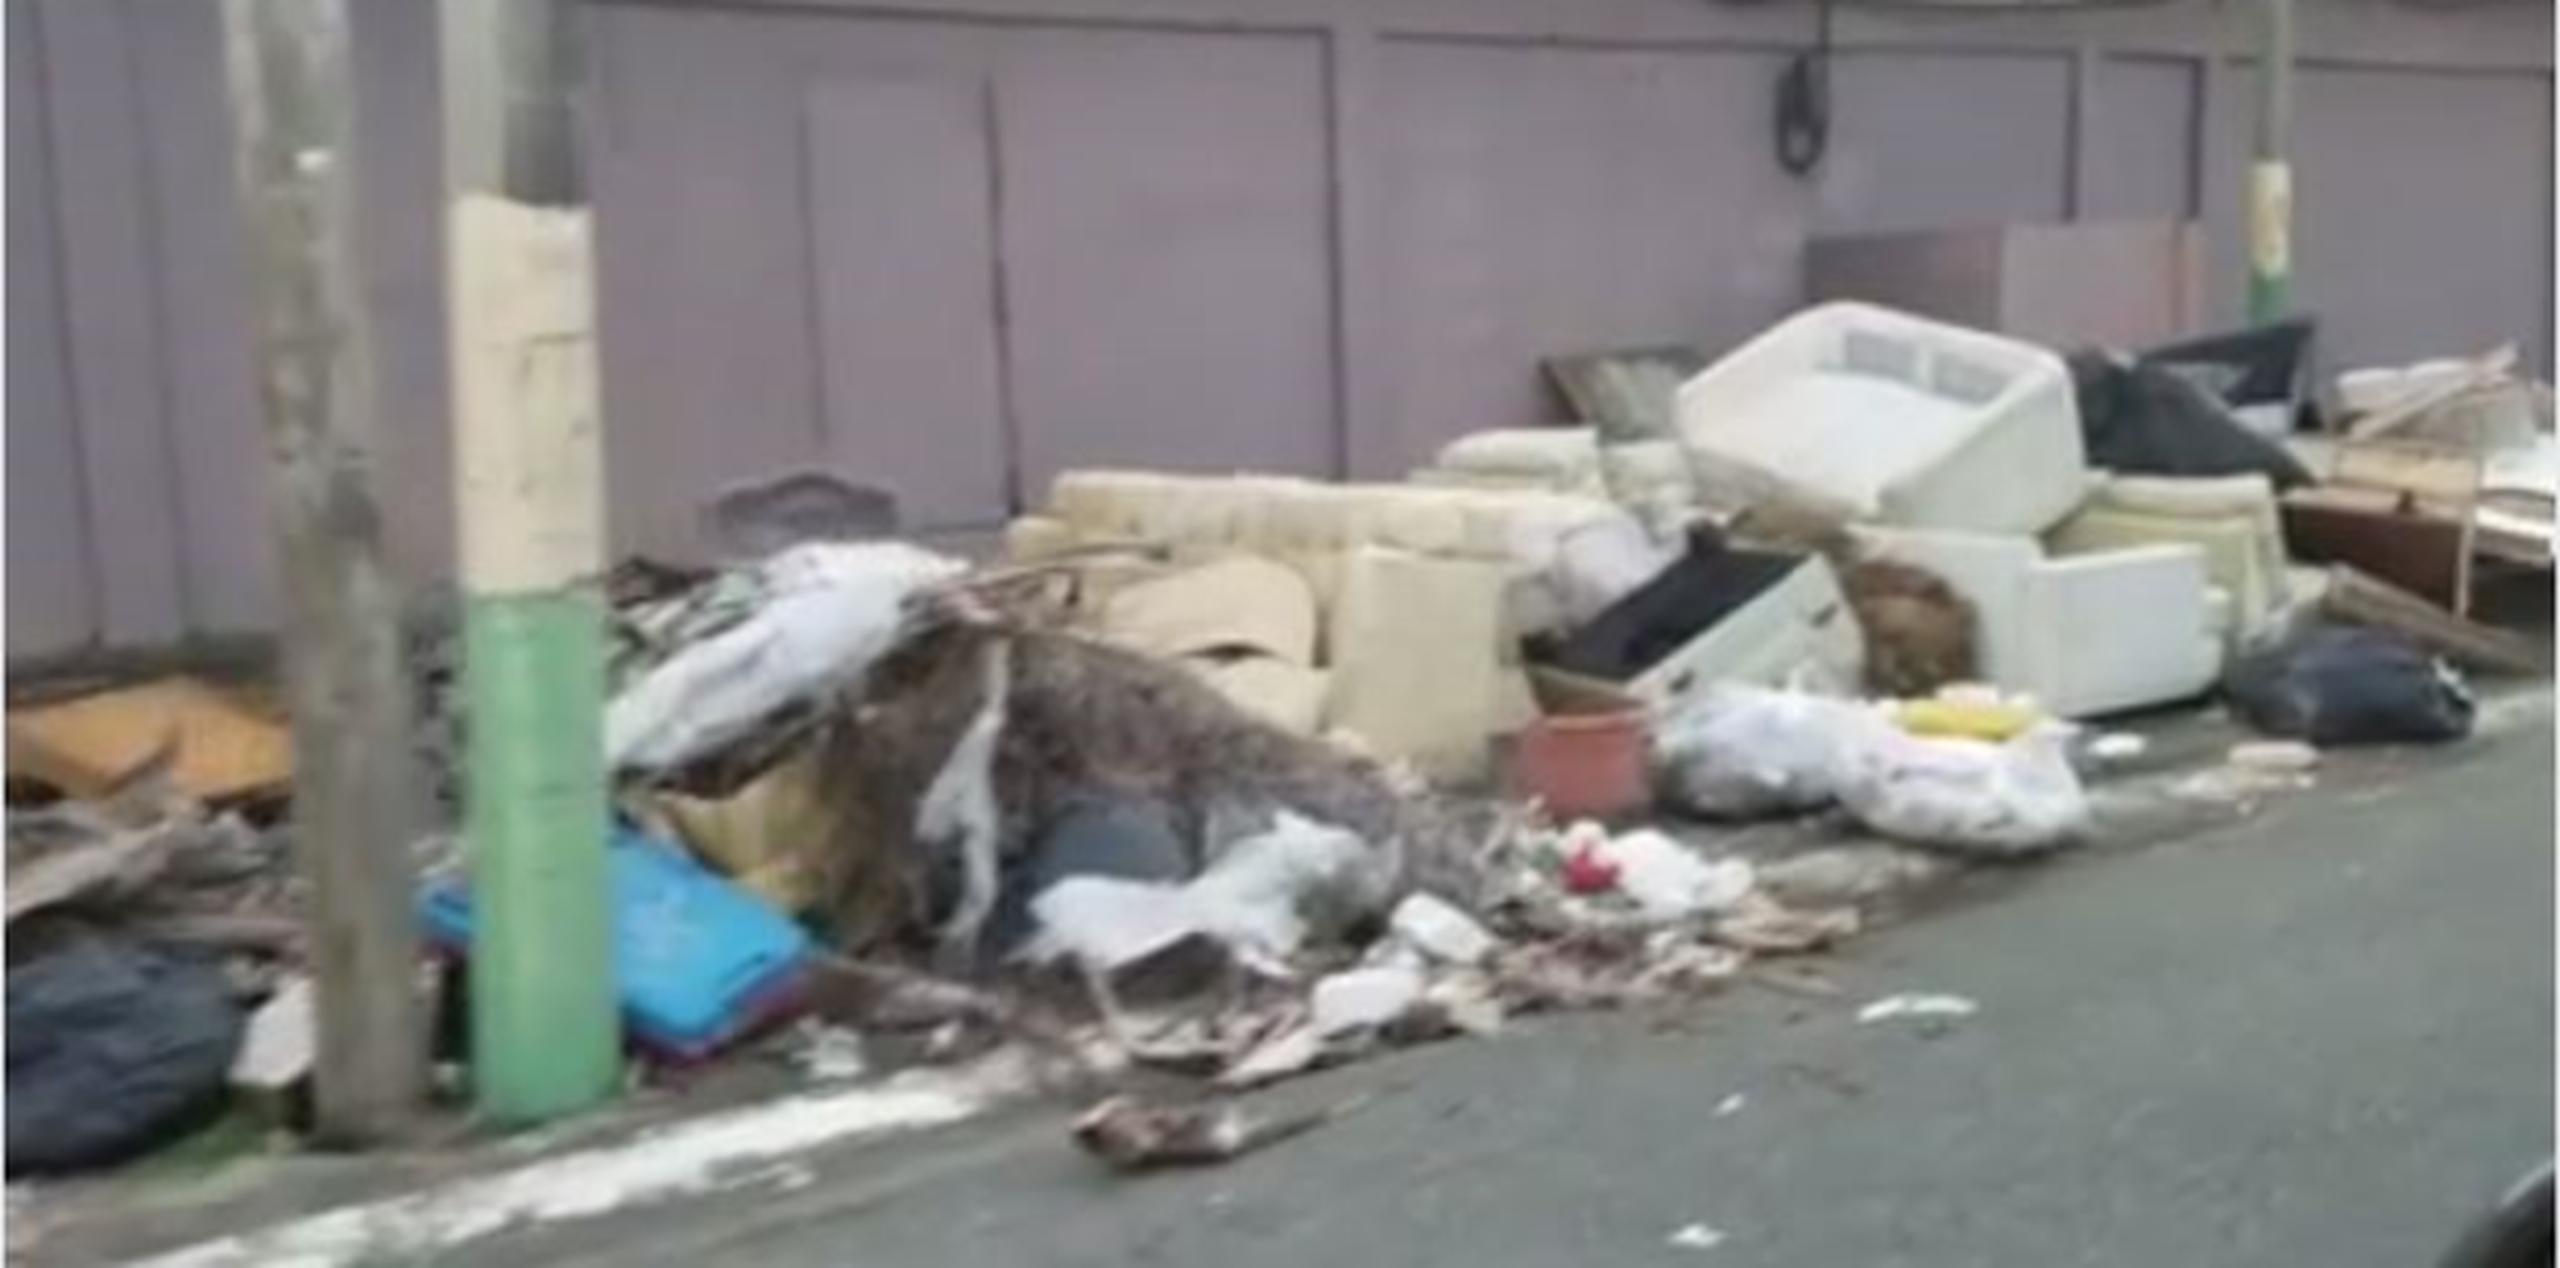 La basura inunda las calles de Levittown, según imágenes recogidas por ciudadanos. (Captura/Facebook)